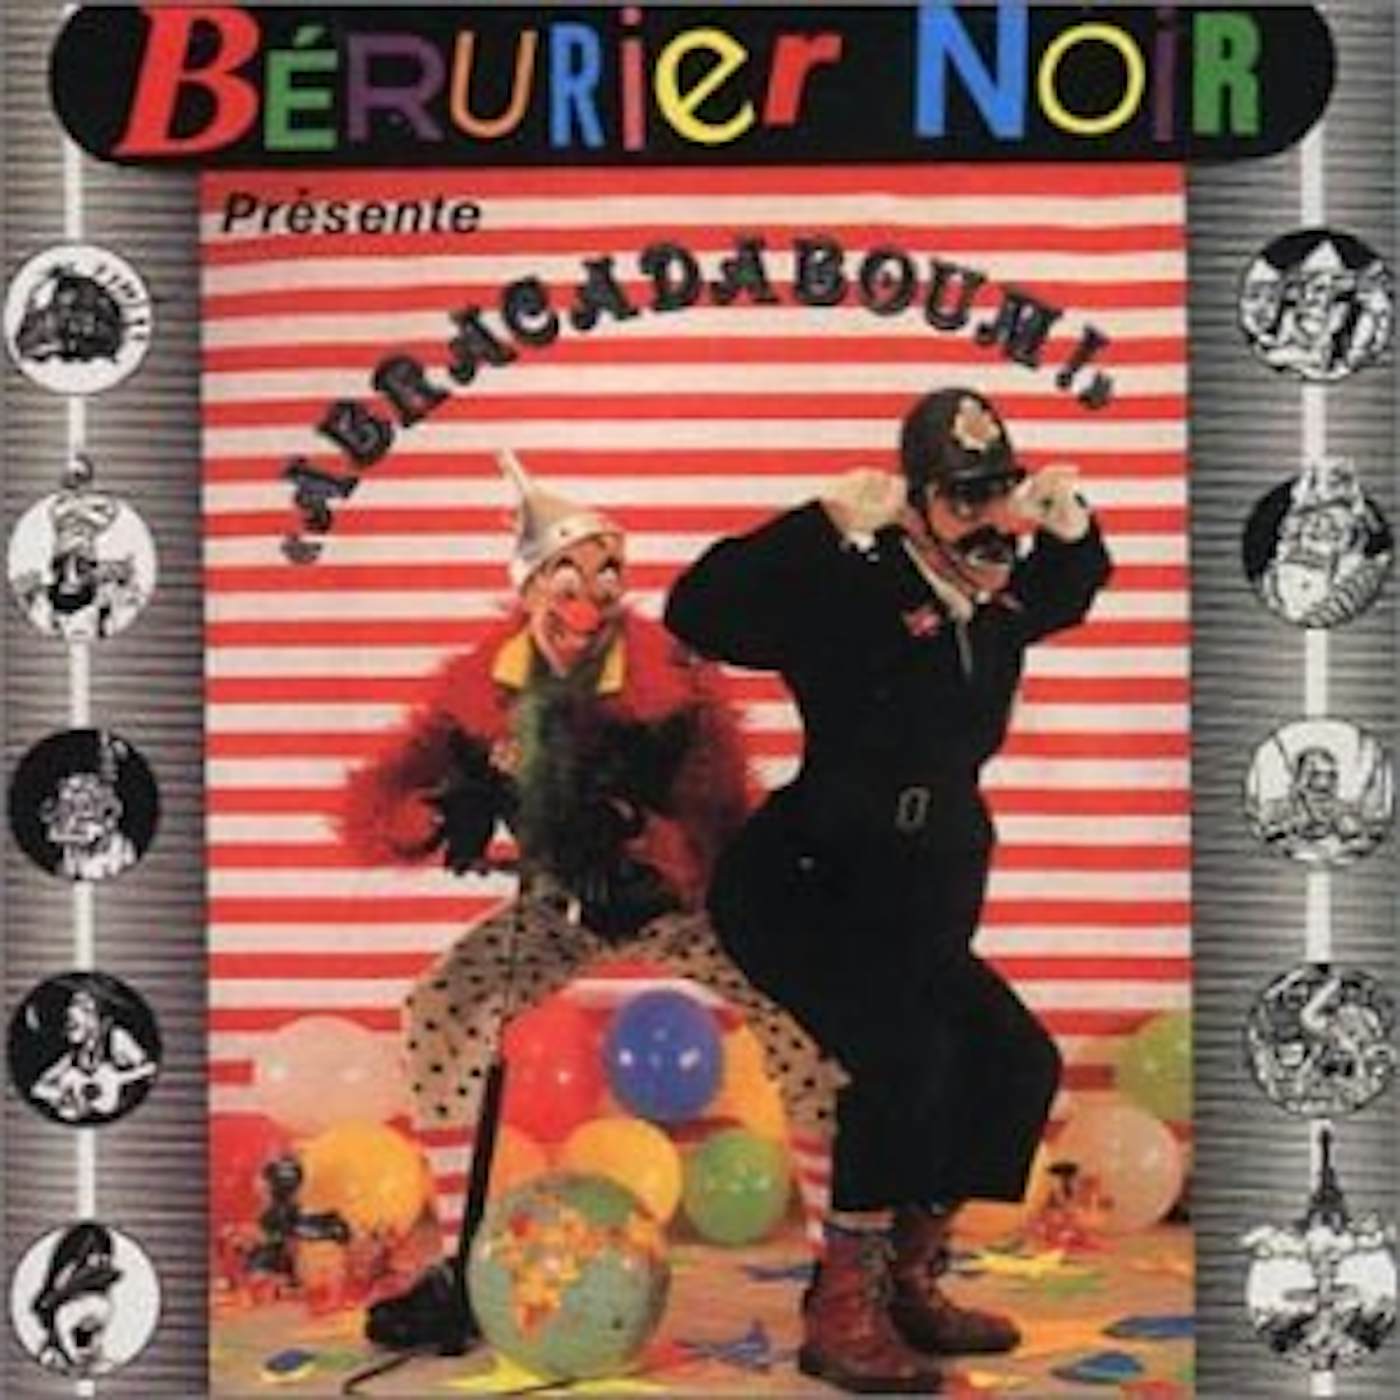 Bérurier Noir Abracadaboum Vinyl Record